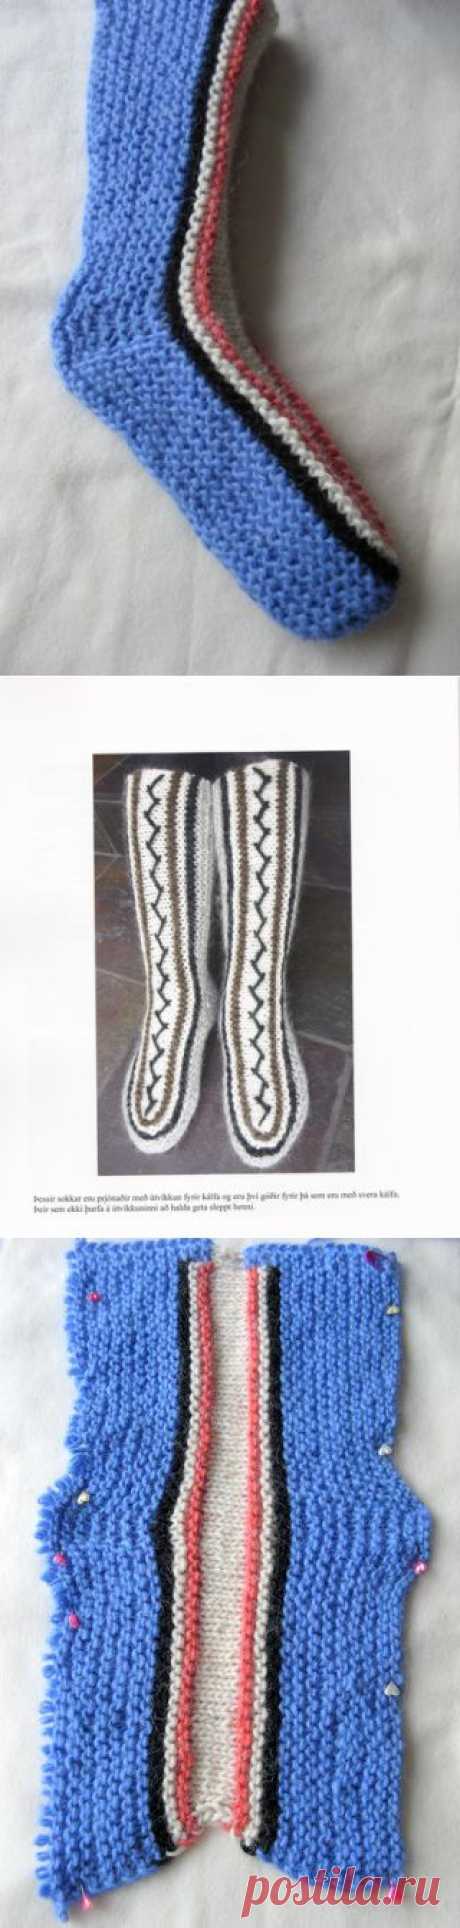 Традиционные домашние носки исландцы вяжут быстро и без затей - на двух спицах